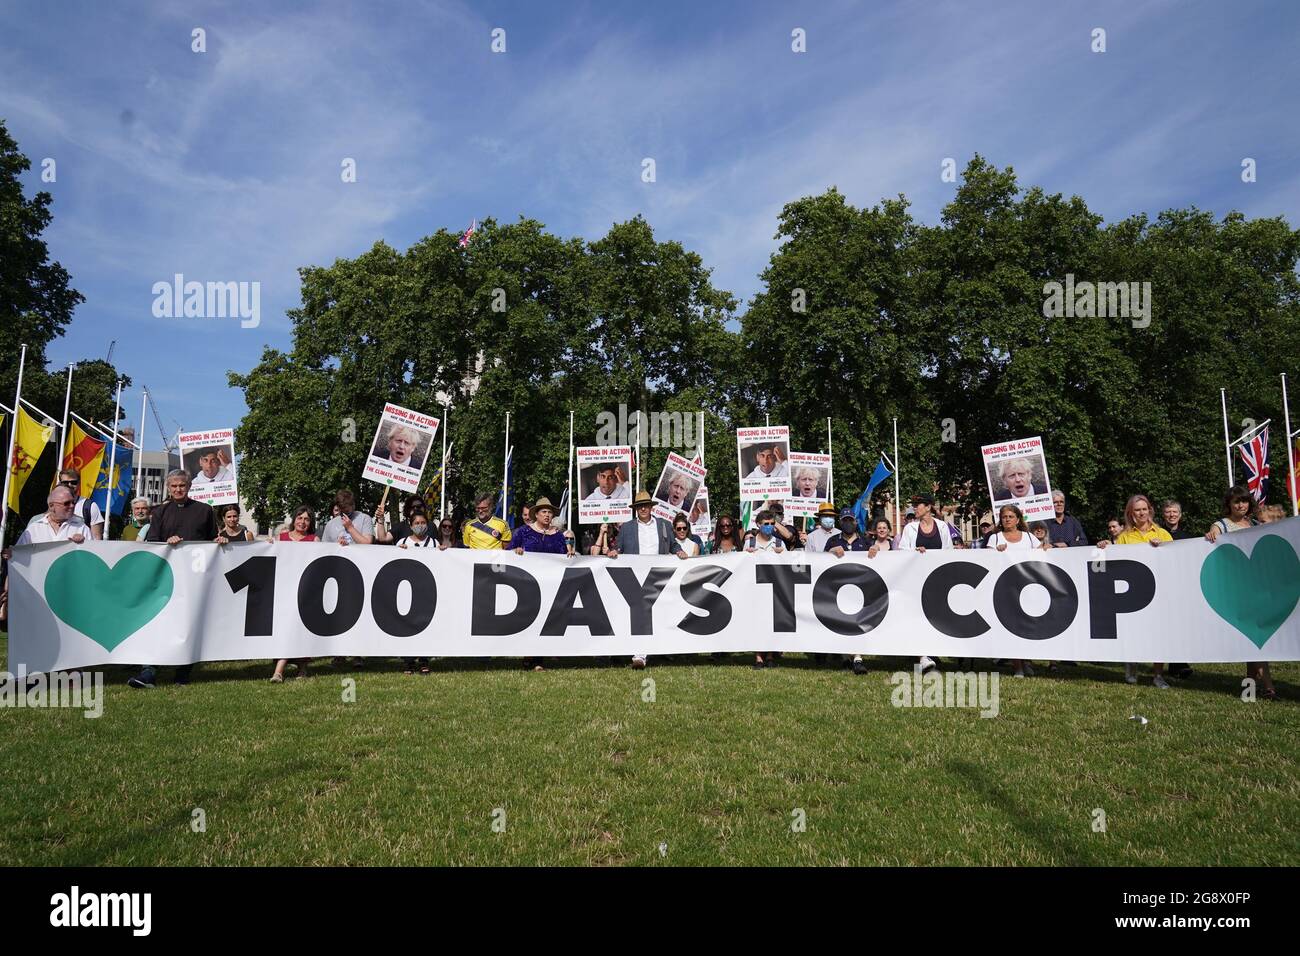 Gli attivisti hanno un banner durante una dimostrazione organizzata dalla Coalizione del clima a Parliament Square, Londra, per segnare 100 giorni per andare fino al vertice del clima del Cop26 a Glasgow. Data immagine: Venerdì 23 luglio 2021. Foto Stock